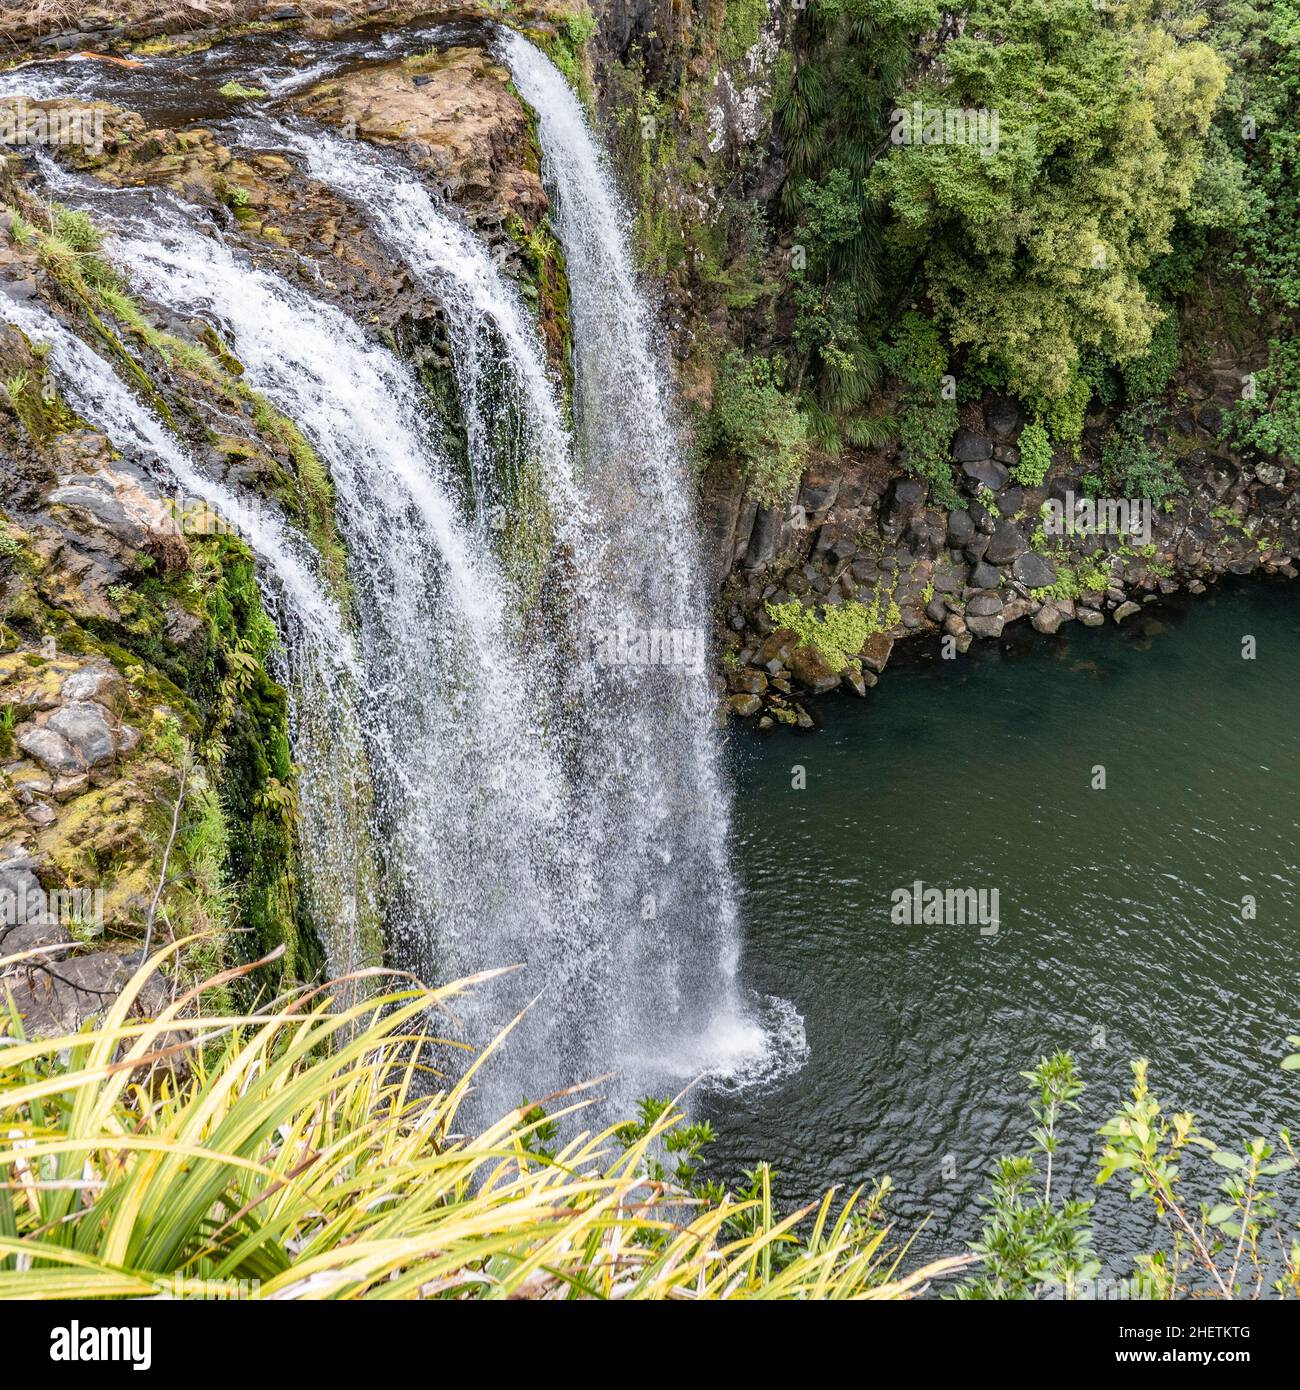 Les chutes de Whangarei sont situées dans la réserve pittoresque de Whangarei, sur la rivière Hatea, dans la Nouvelle-Zélande Banque D'Images